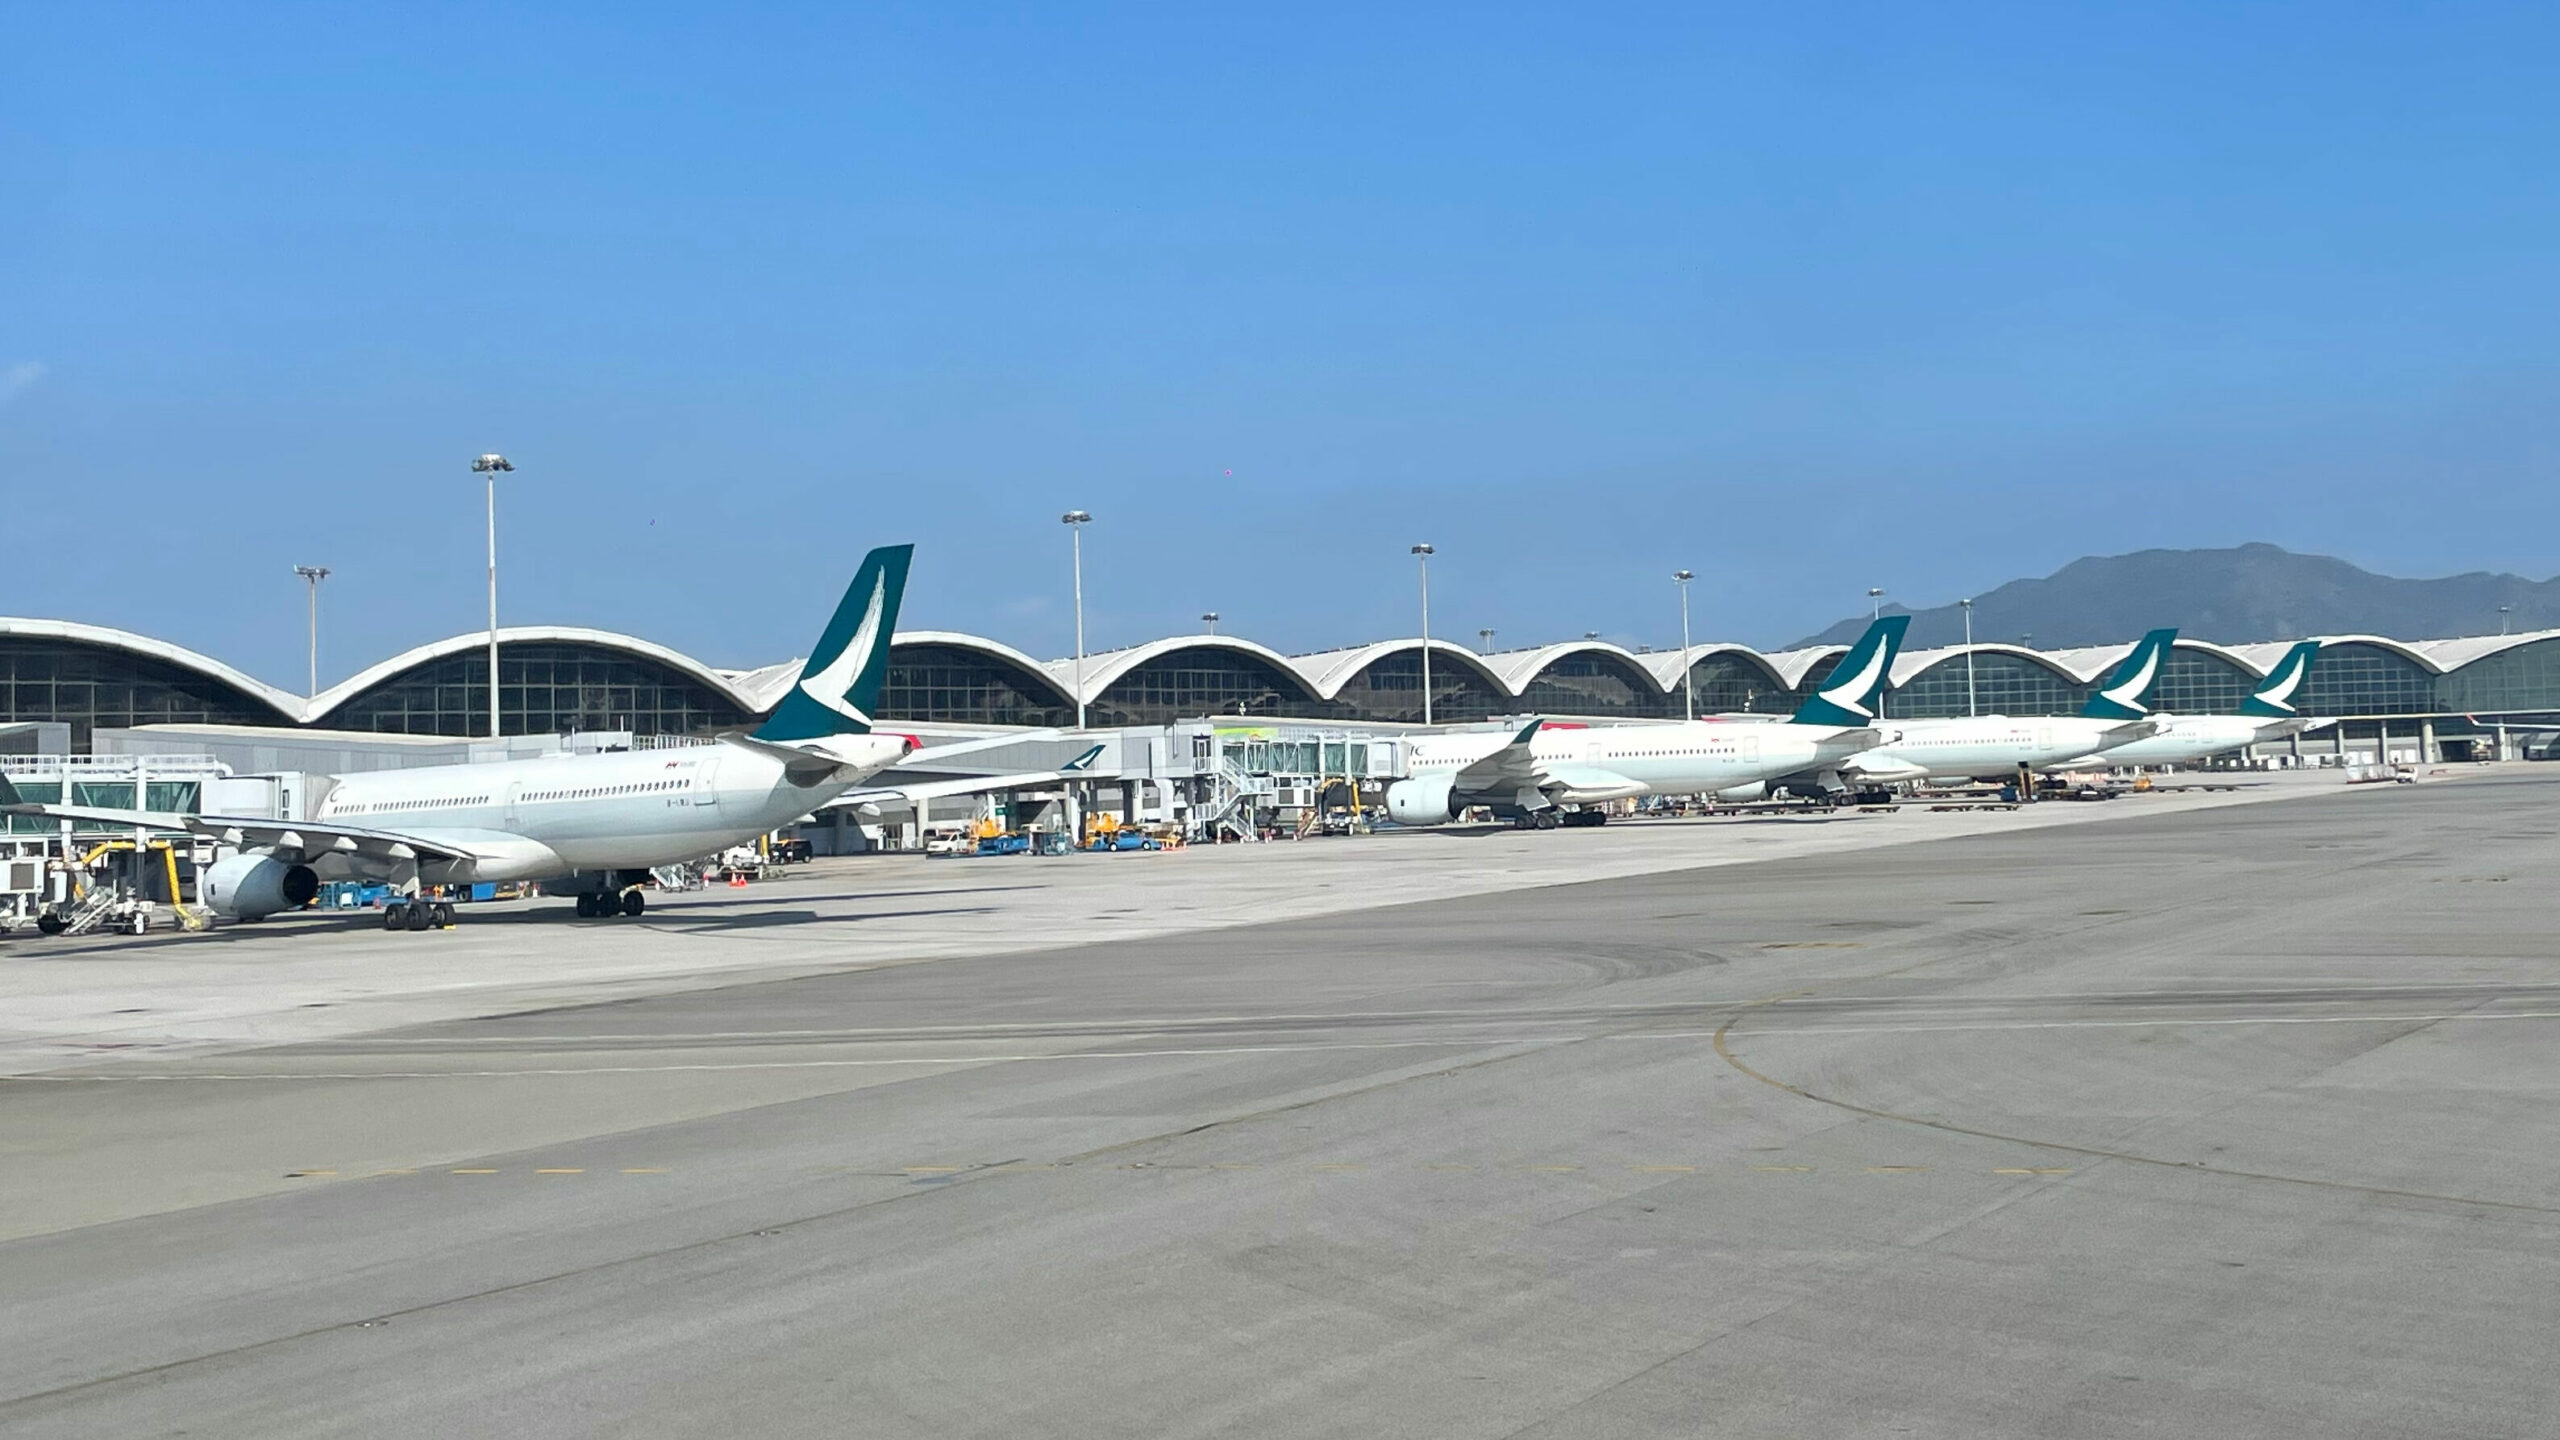 Cathay Pacific Airplanes at Hong Kong International Airport